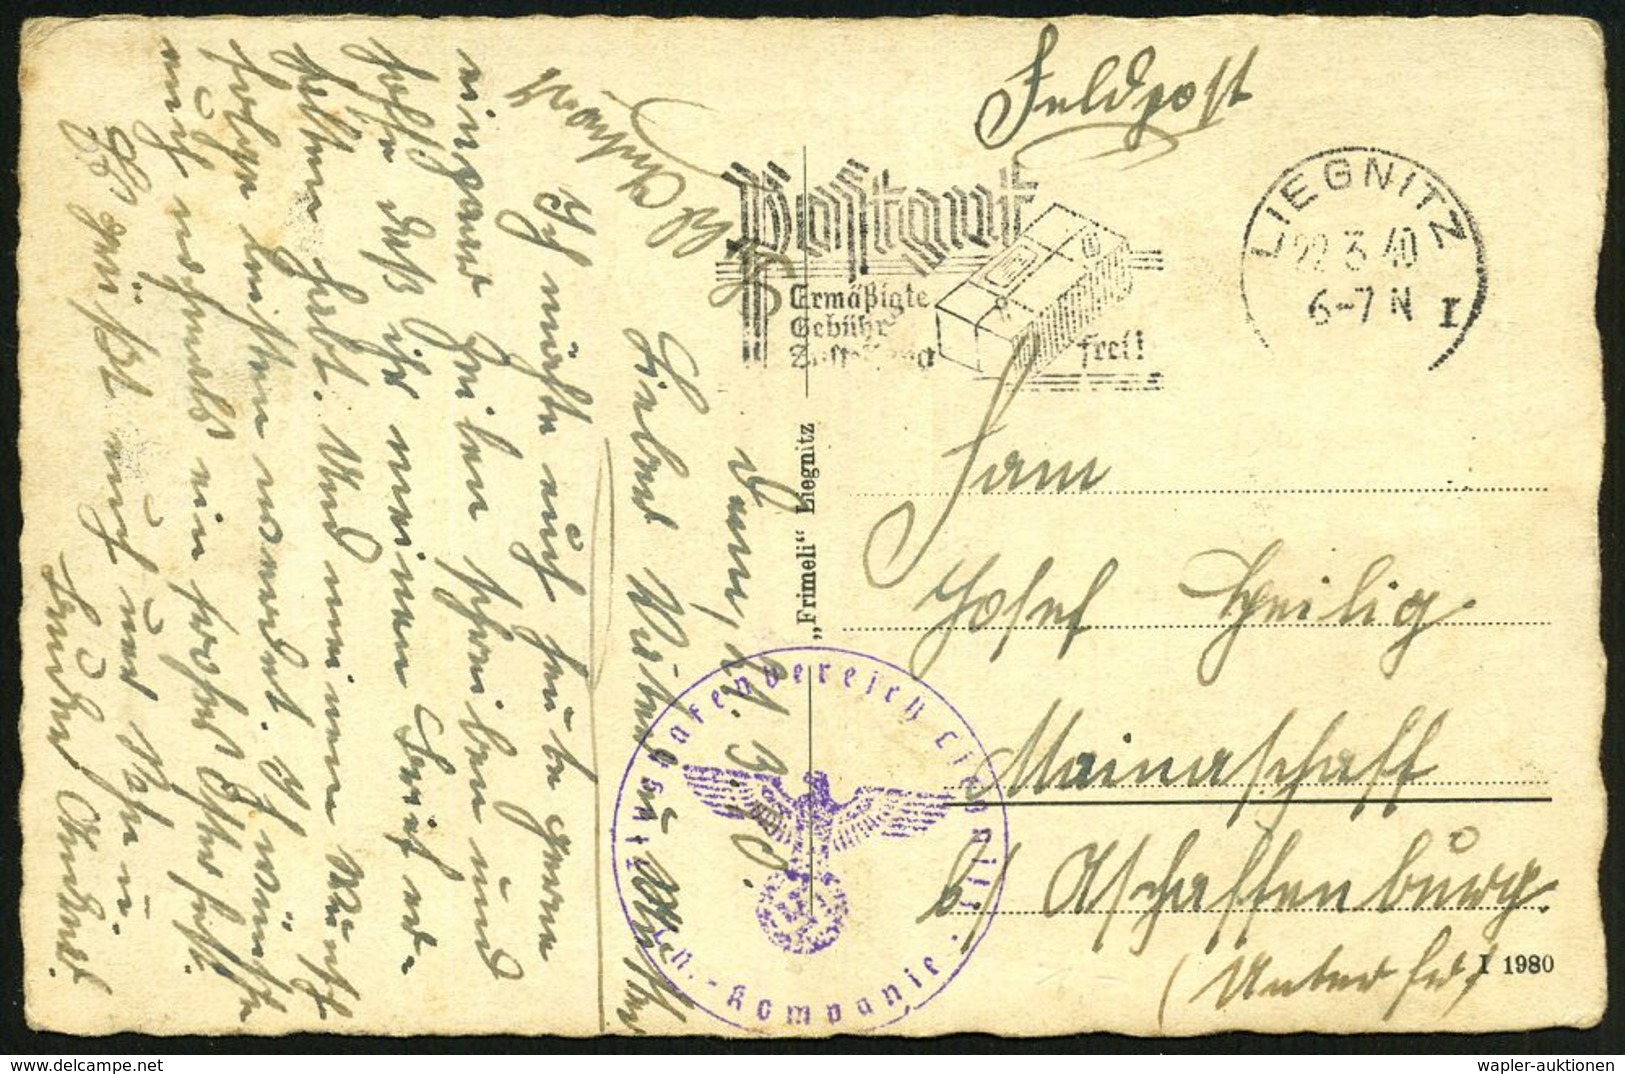 LIEGNITZ/ I/ Postgut/ Ermäßigte/ Gebühr/ Zustellung Frei! 1940 (22.3.) MWSt + Viol. 1K-HdN: Flughafenbereich Liegnitz/ L - Flugzeuge